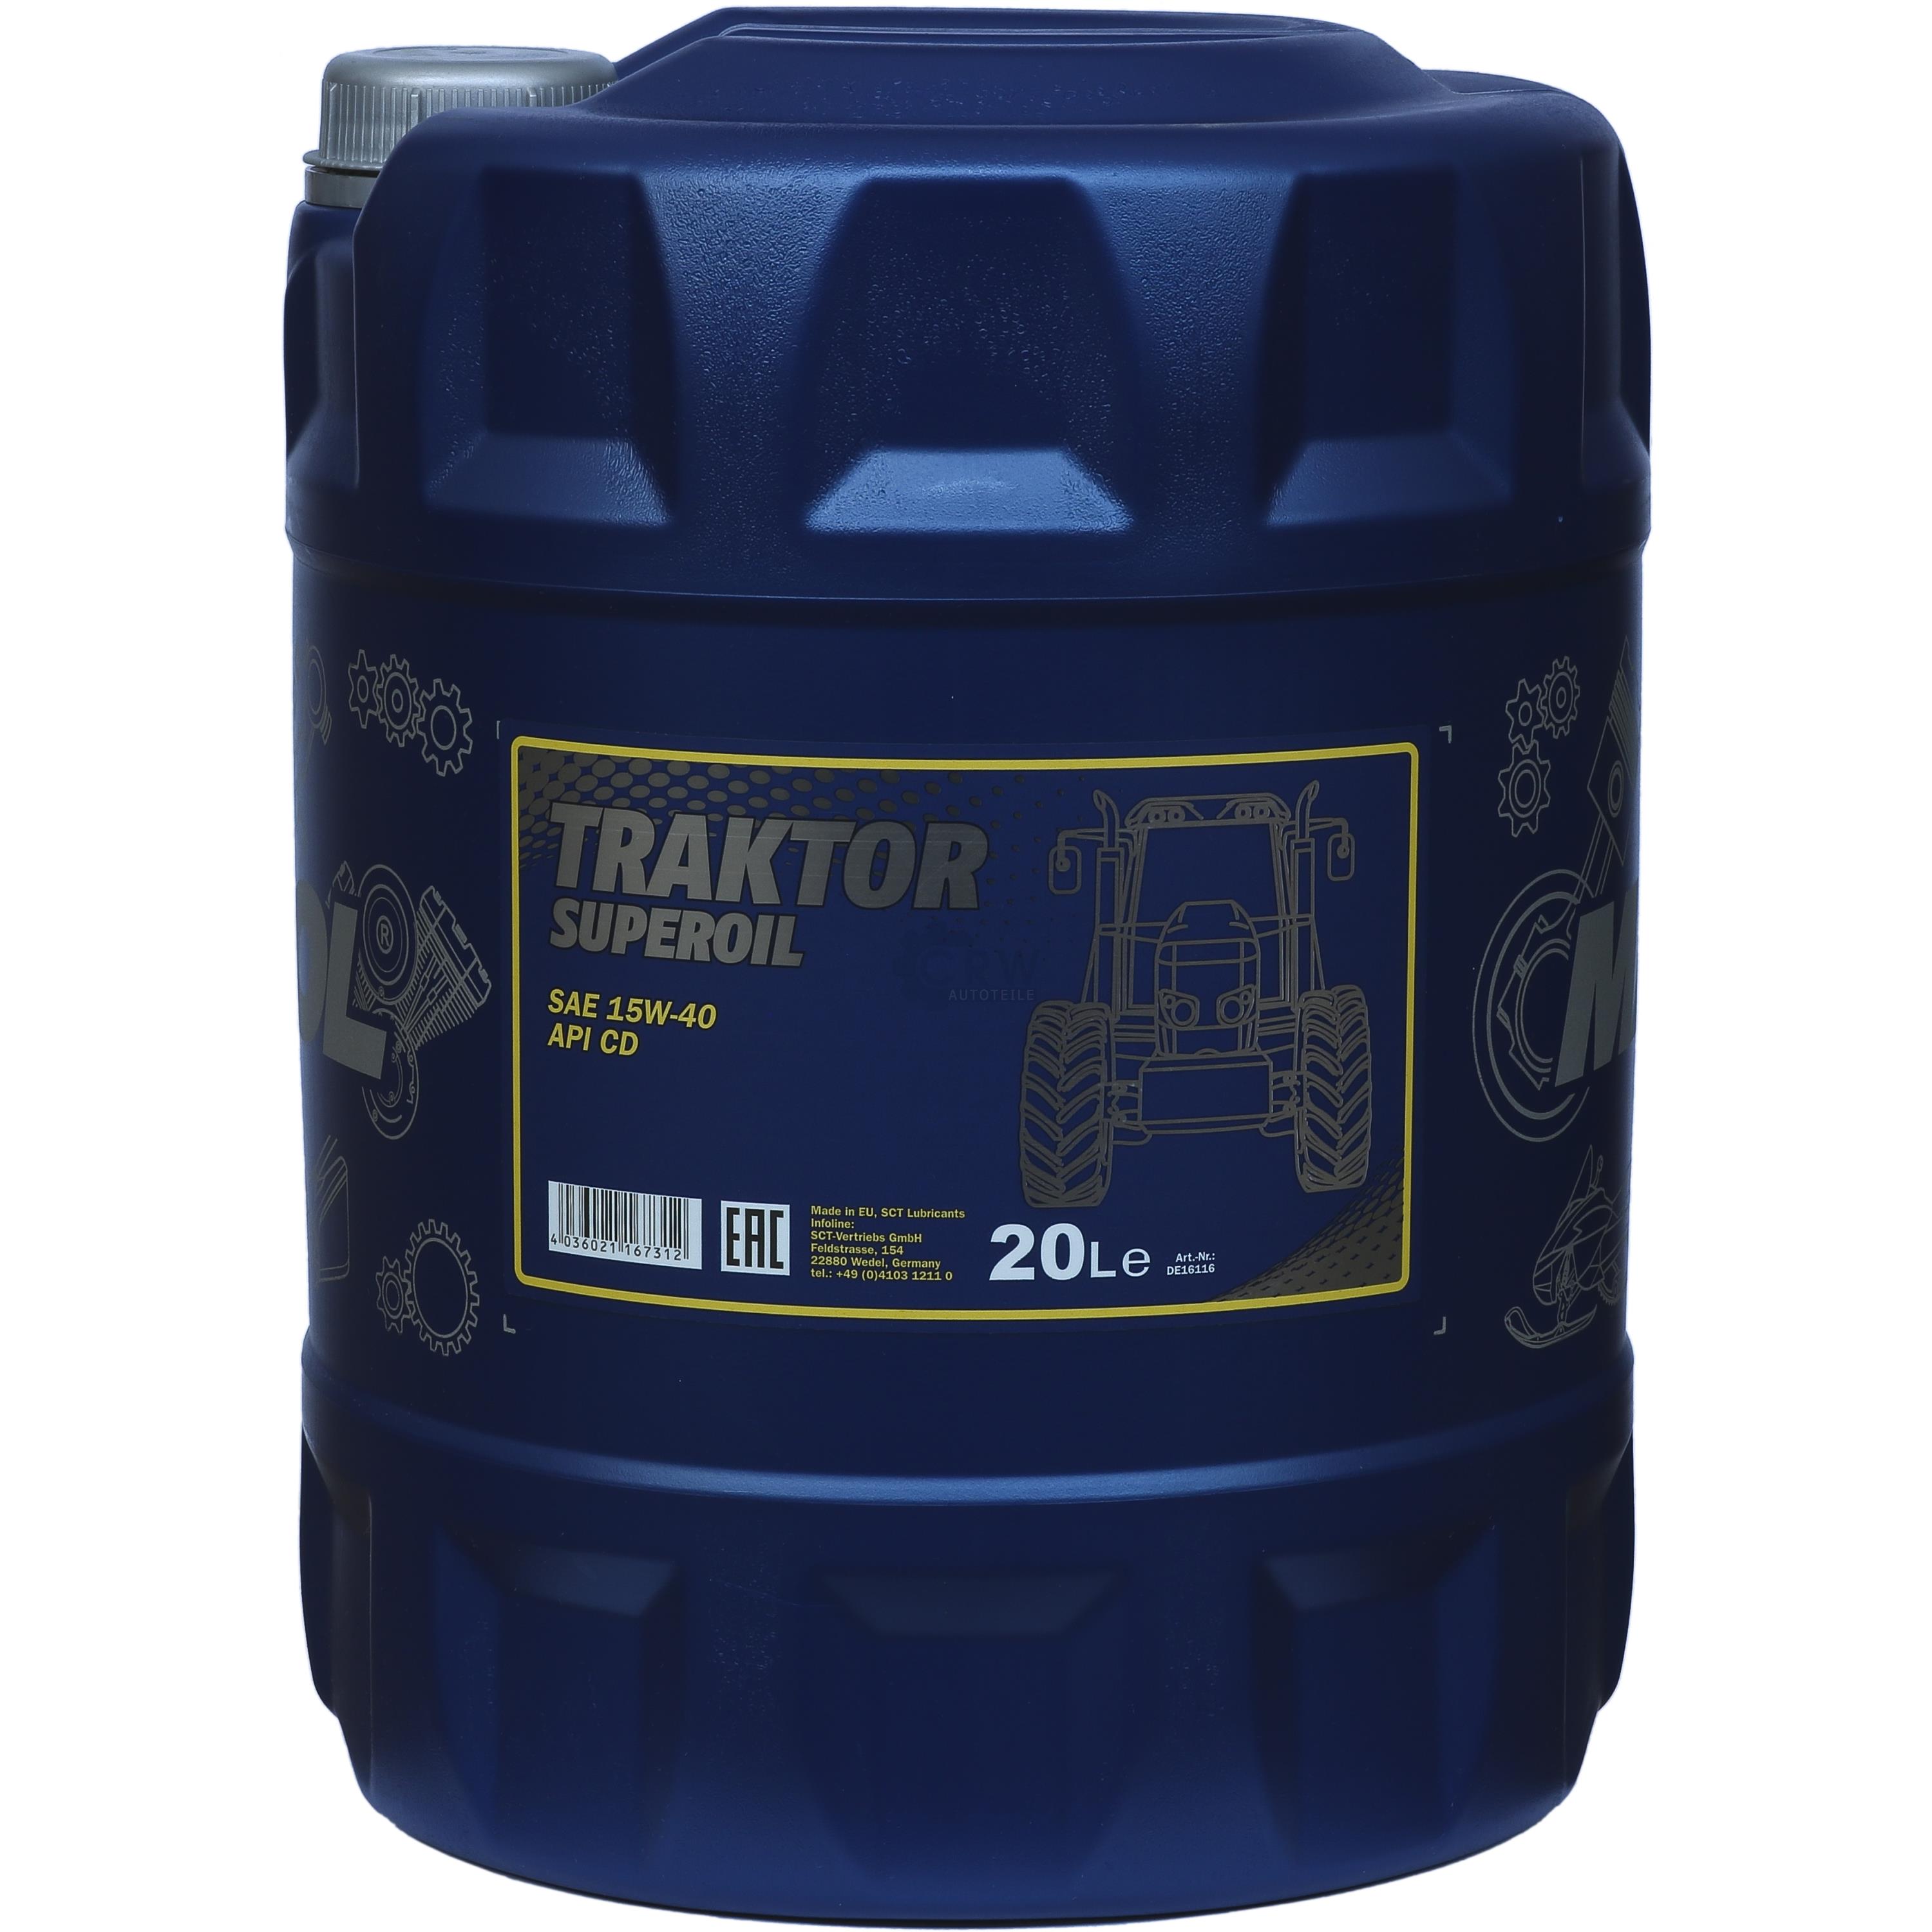 20 Liter Orignal MANNOL Motoröl Traktor Superoil API CD 15W-40  Engine Oil Öl